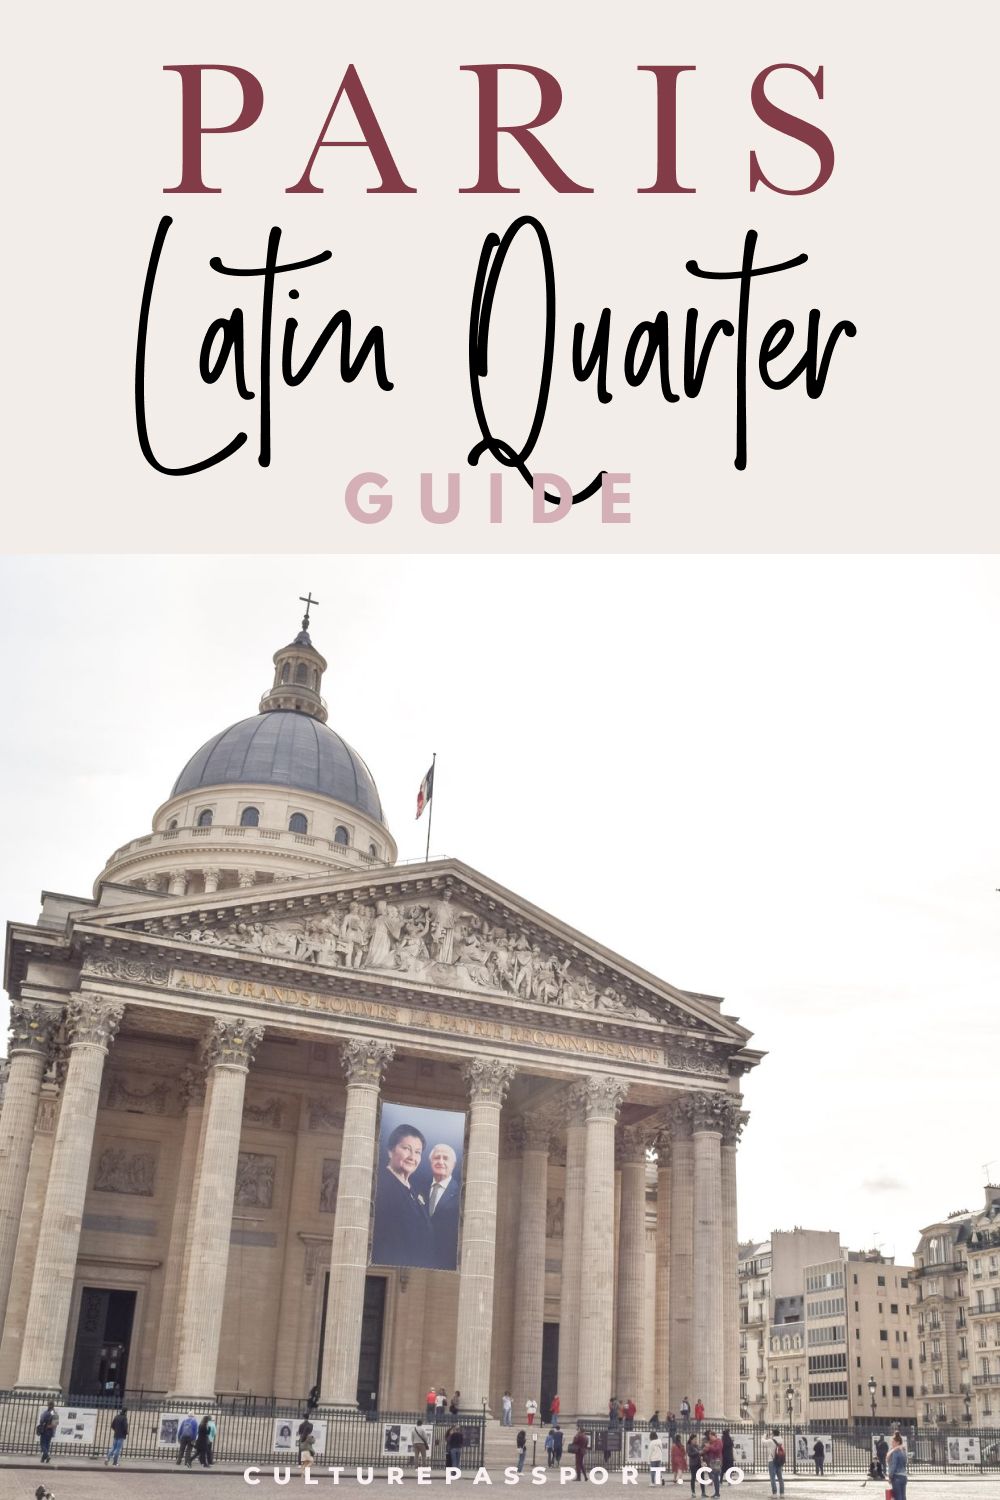 Paris Latin Quarter Guide